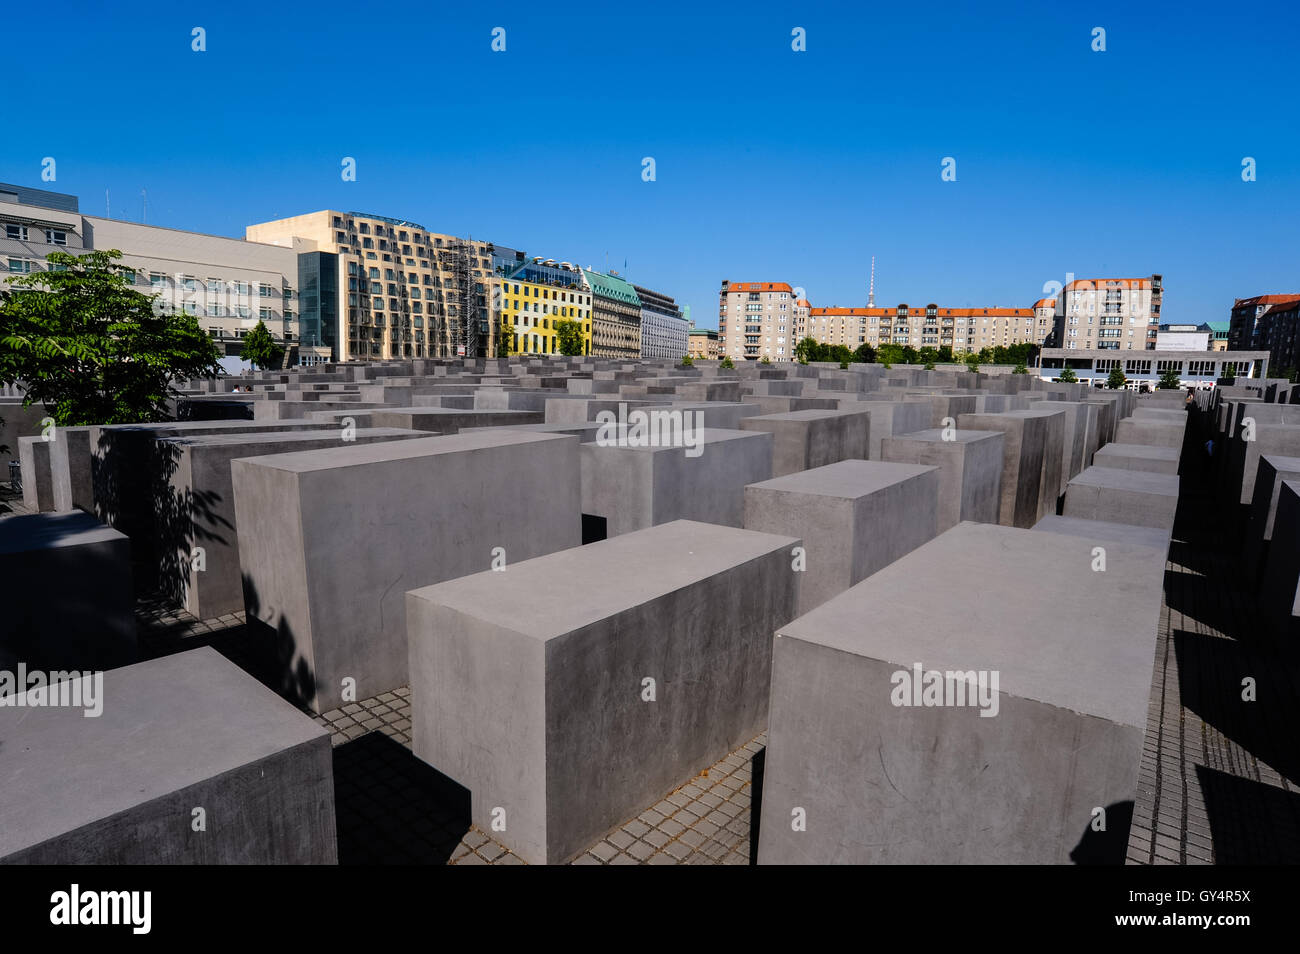 Berlin, Allemagne. Mémorial aux Juifs assassinés d'Europe, également connu sous le nom de Mémorial de l'Holocauste. Ouvert en 2005. Banque D'Images